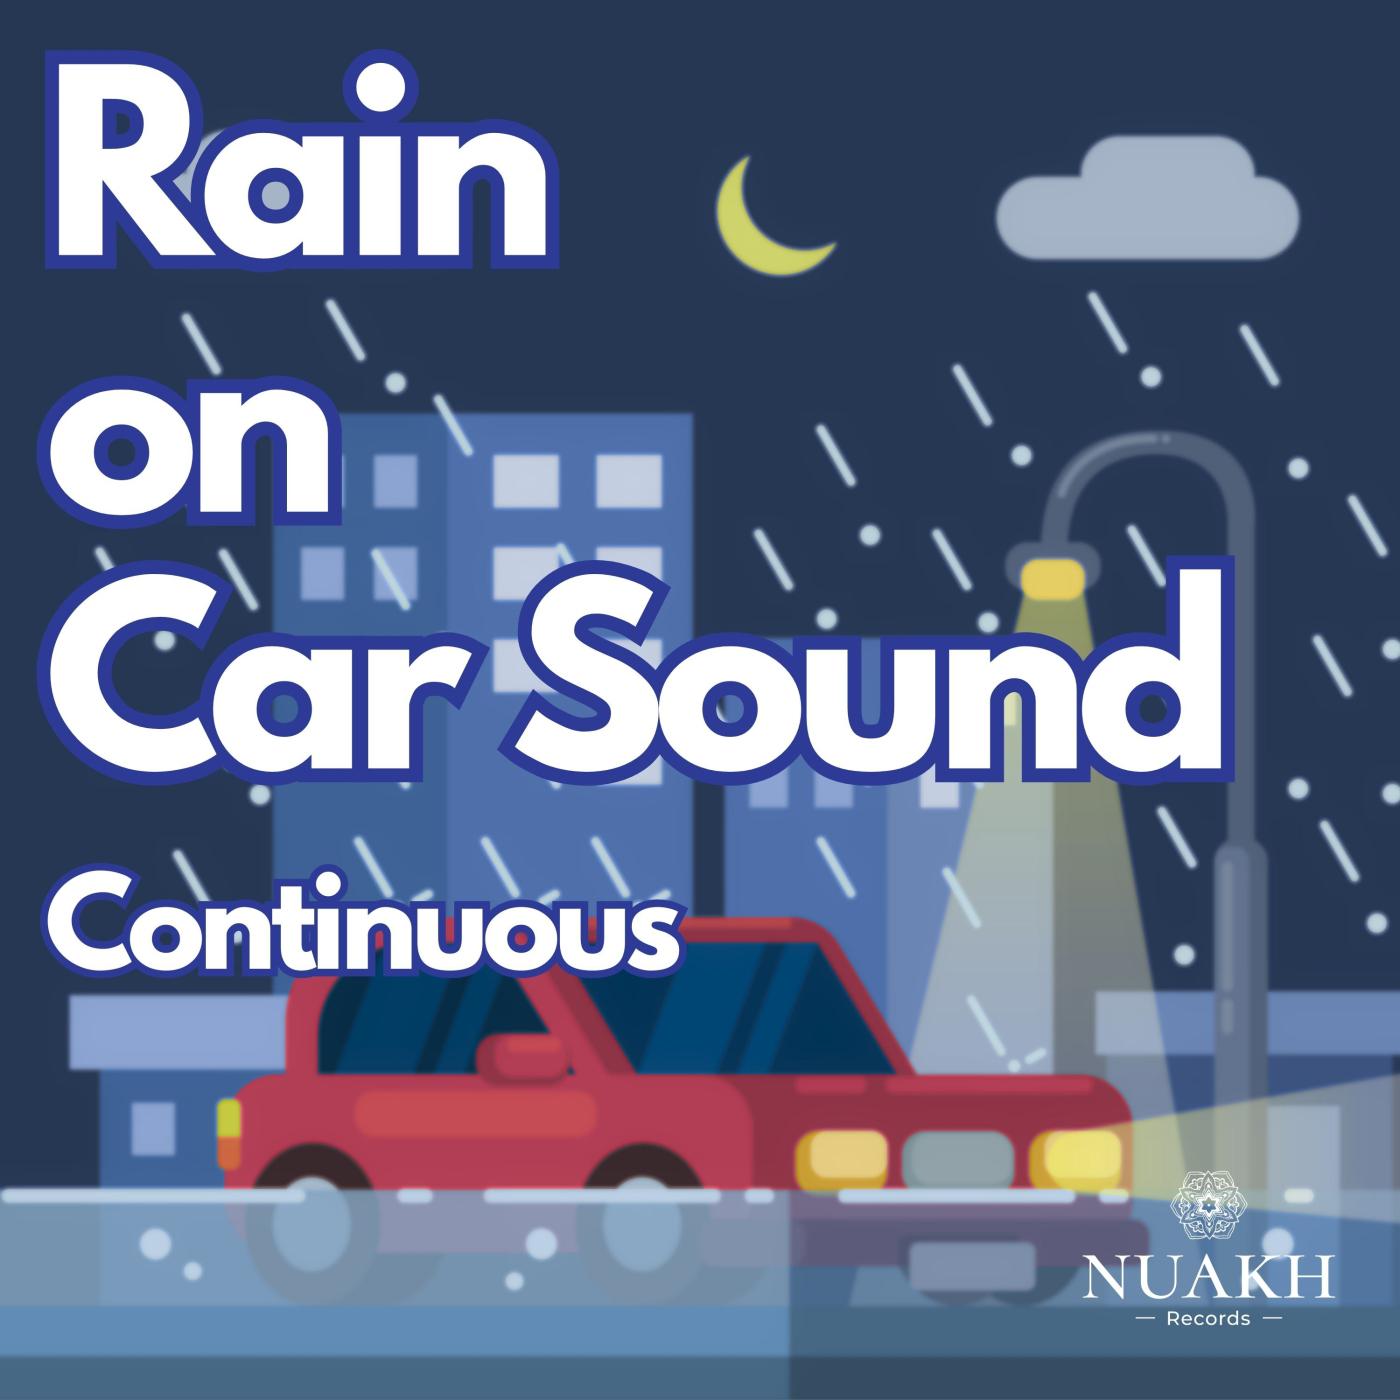 Rain for Sleep - Rain on Car, Pt. 45 (Continuous)